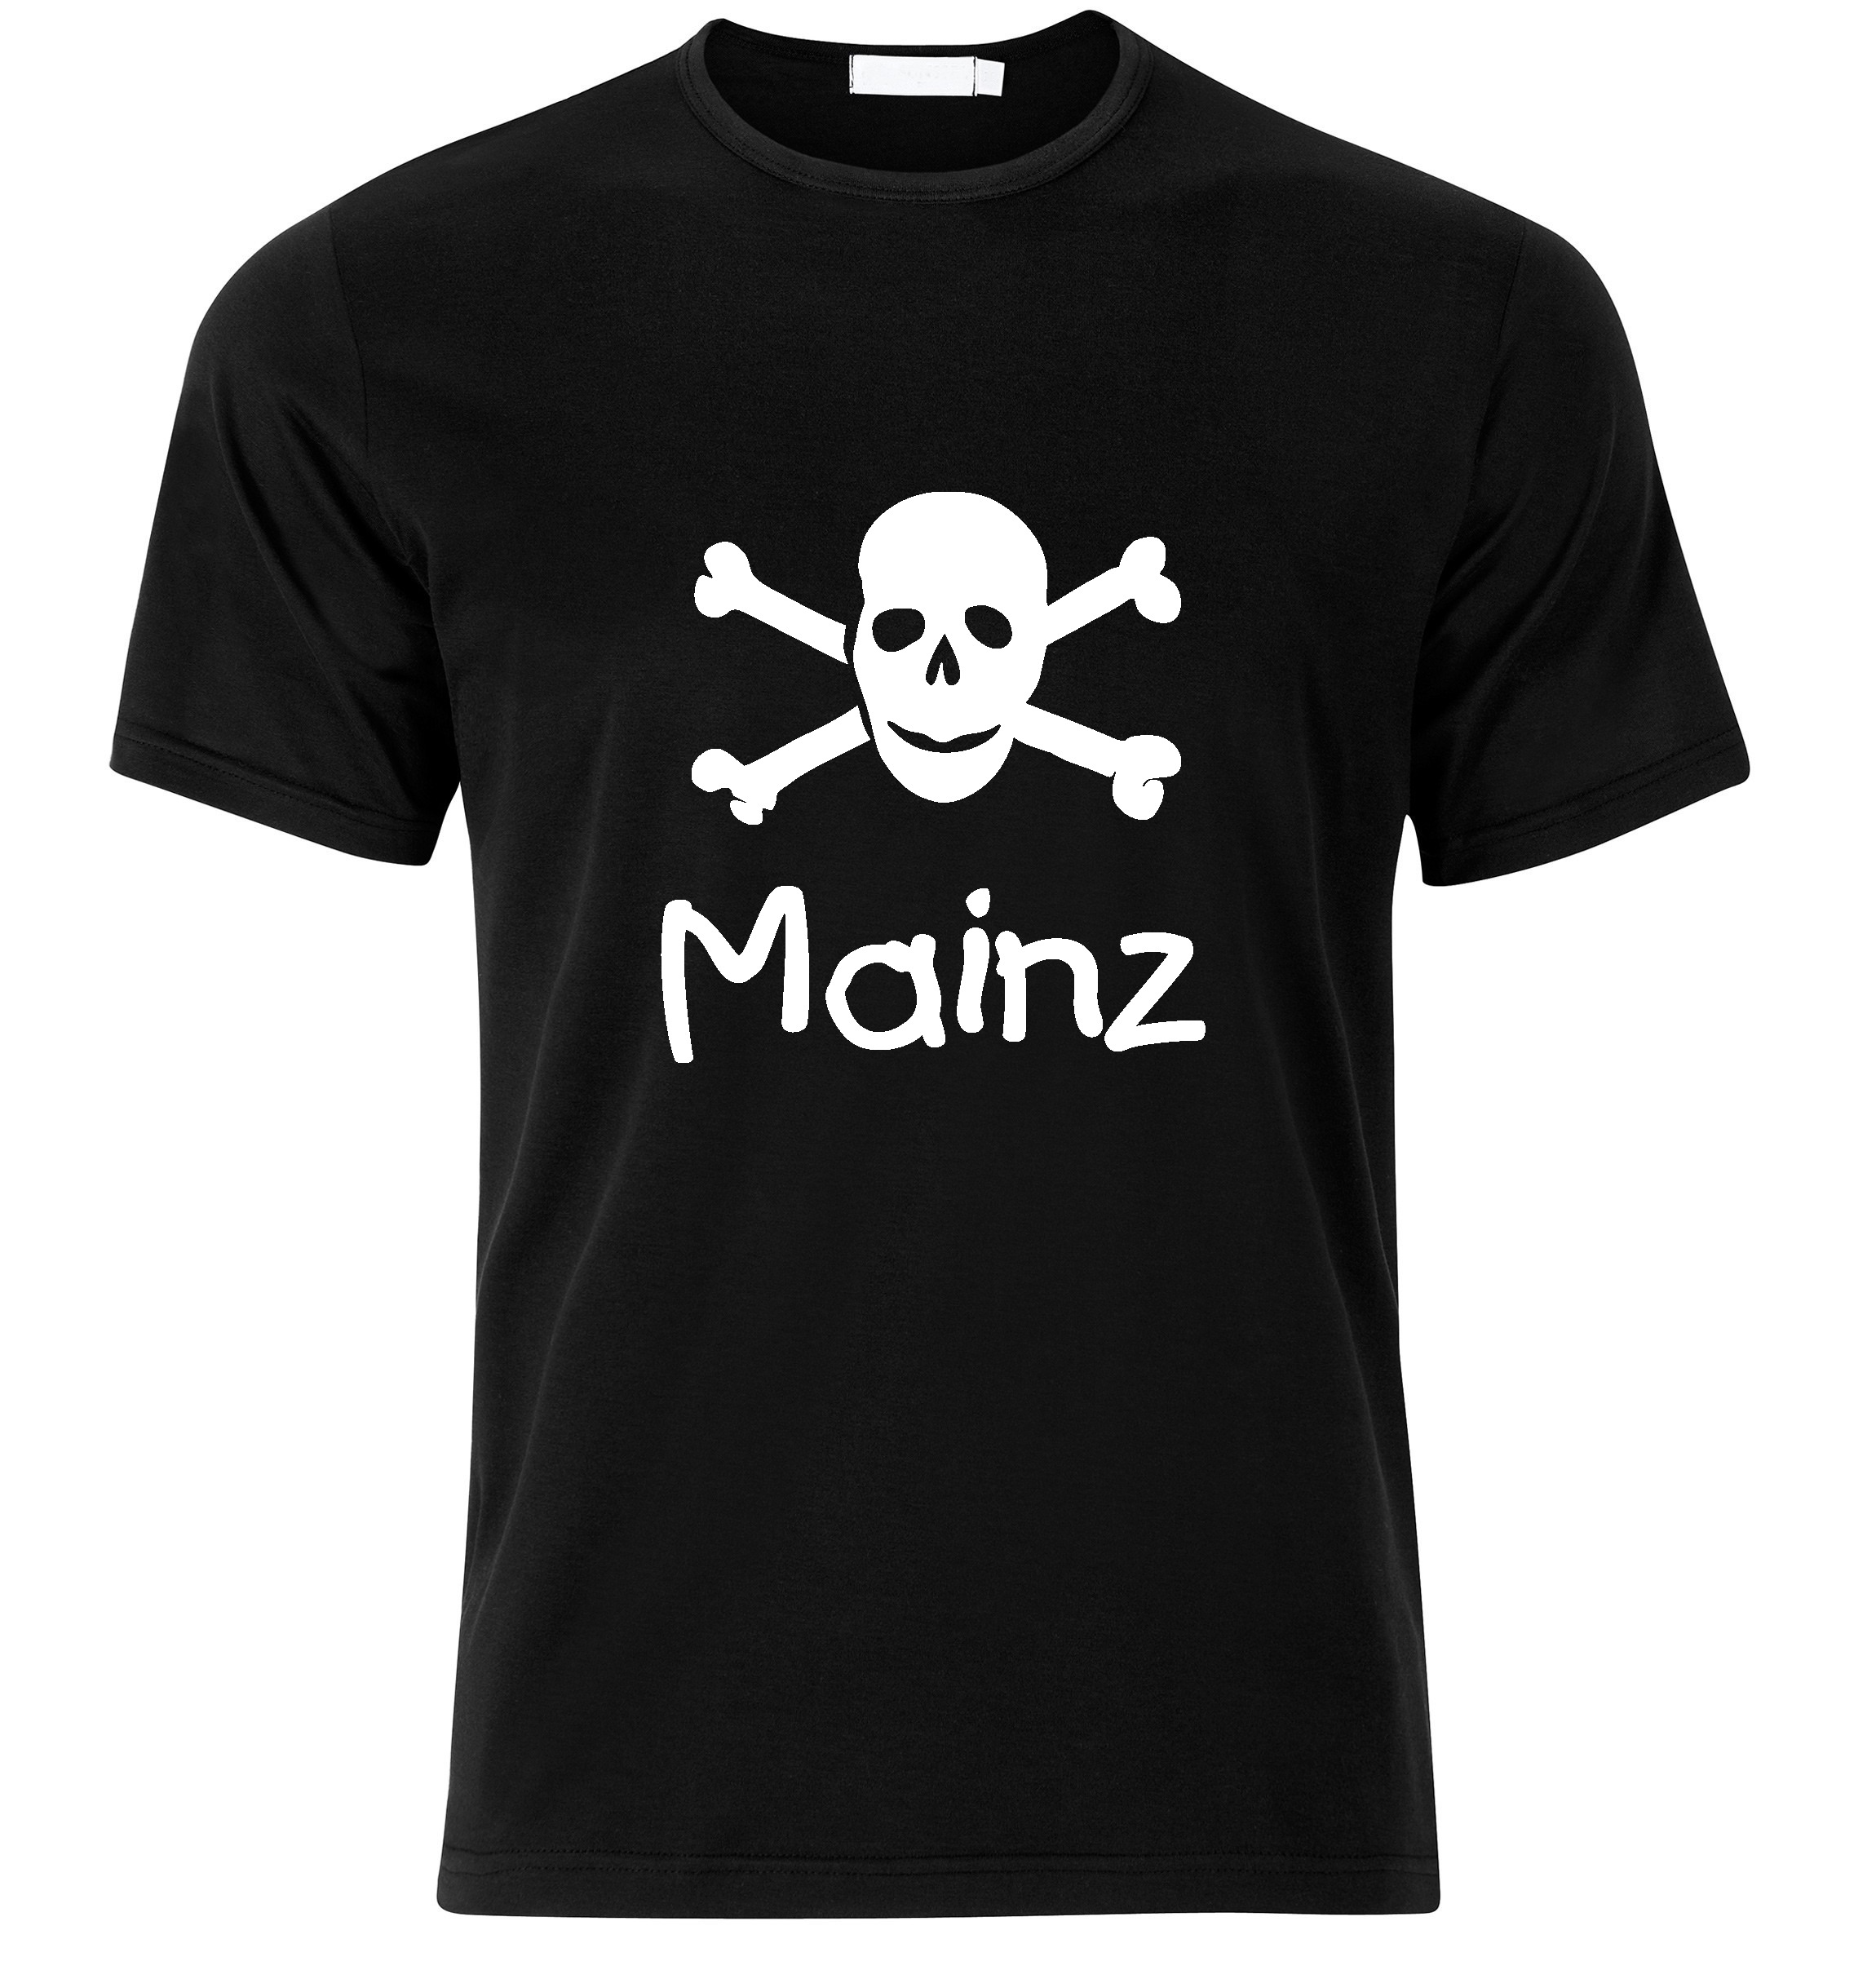 T-Shirt Mainz Jolly Roger, Totenkopf